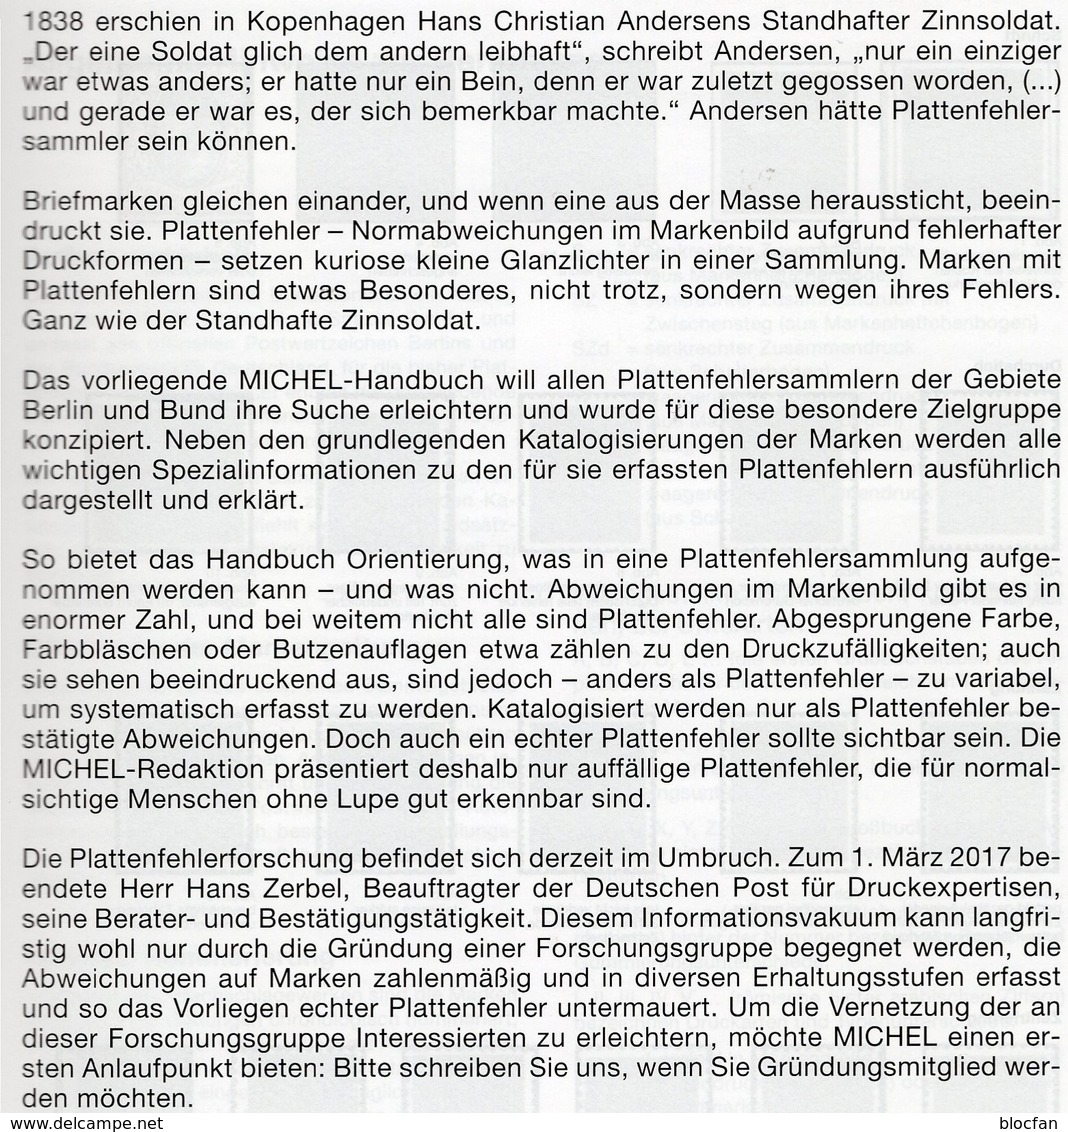 1.Auflage MICHEL Plattenfehler BUND Berlin Neu 2018 40€ Katalog Fehler Auf Briefmarken Error Stamps Catalog Germany - Erstausgaben